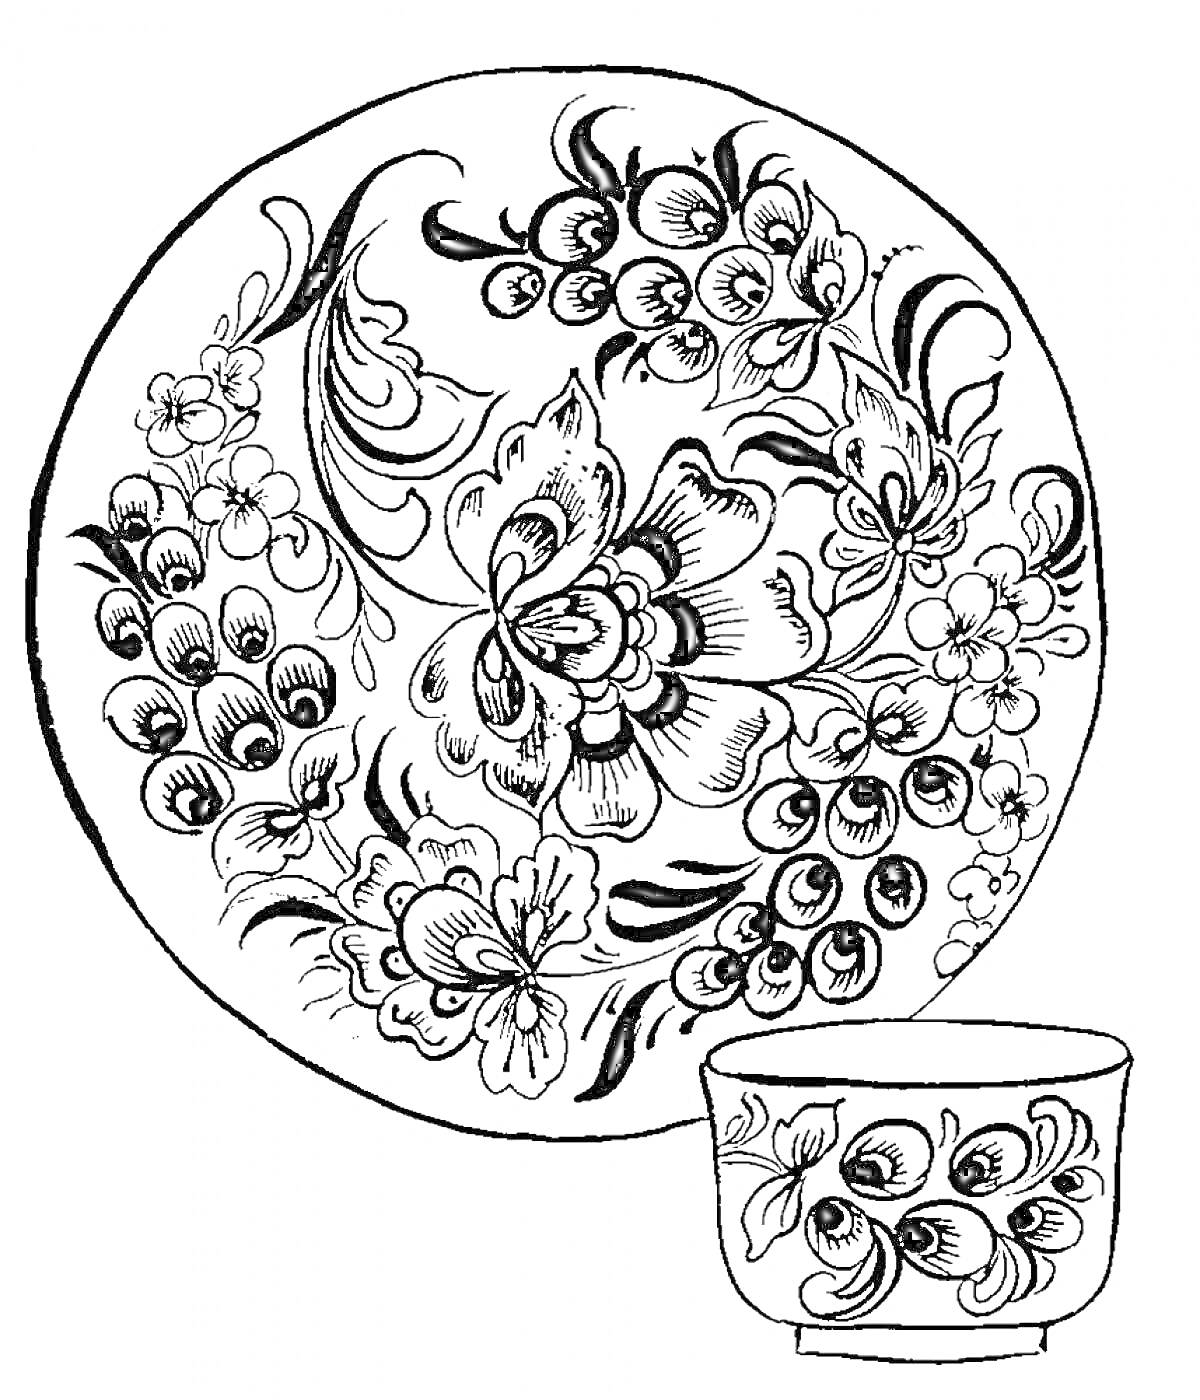 Тарелка и чашка с узорами в стиле хохломы, изображены цветы, ягоды и листва